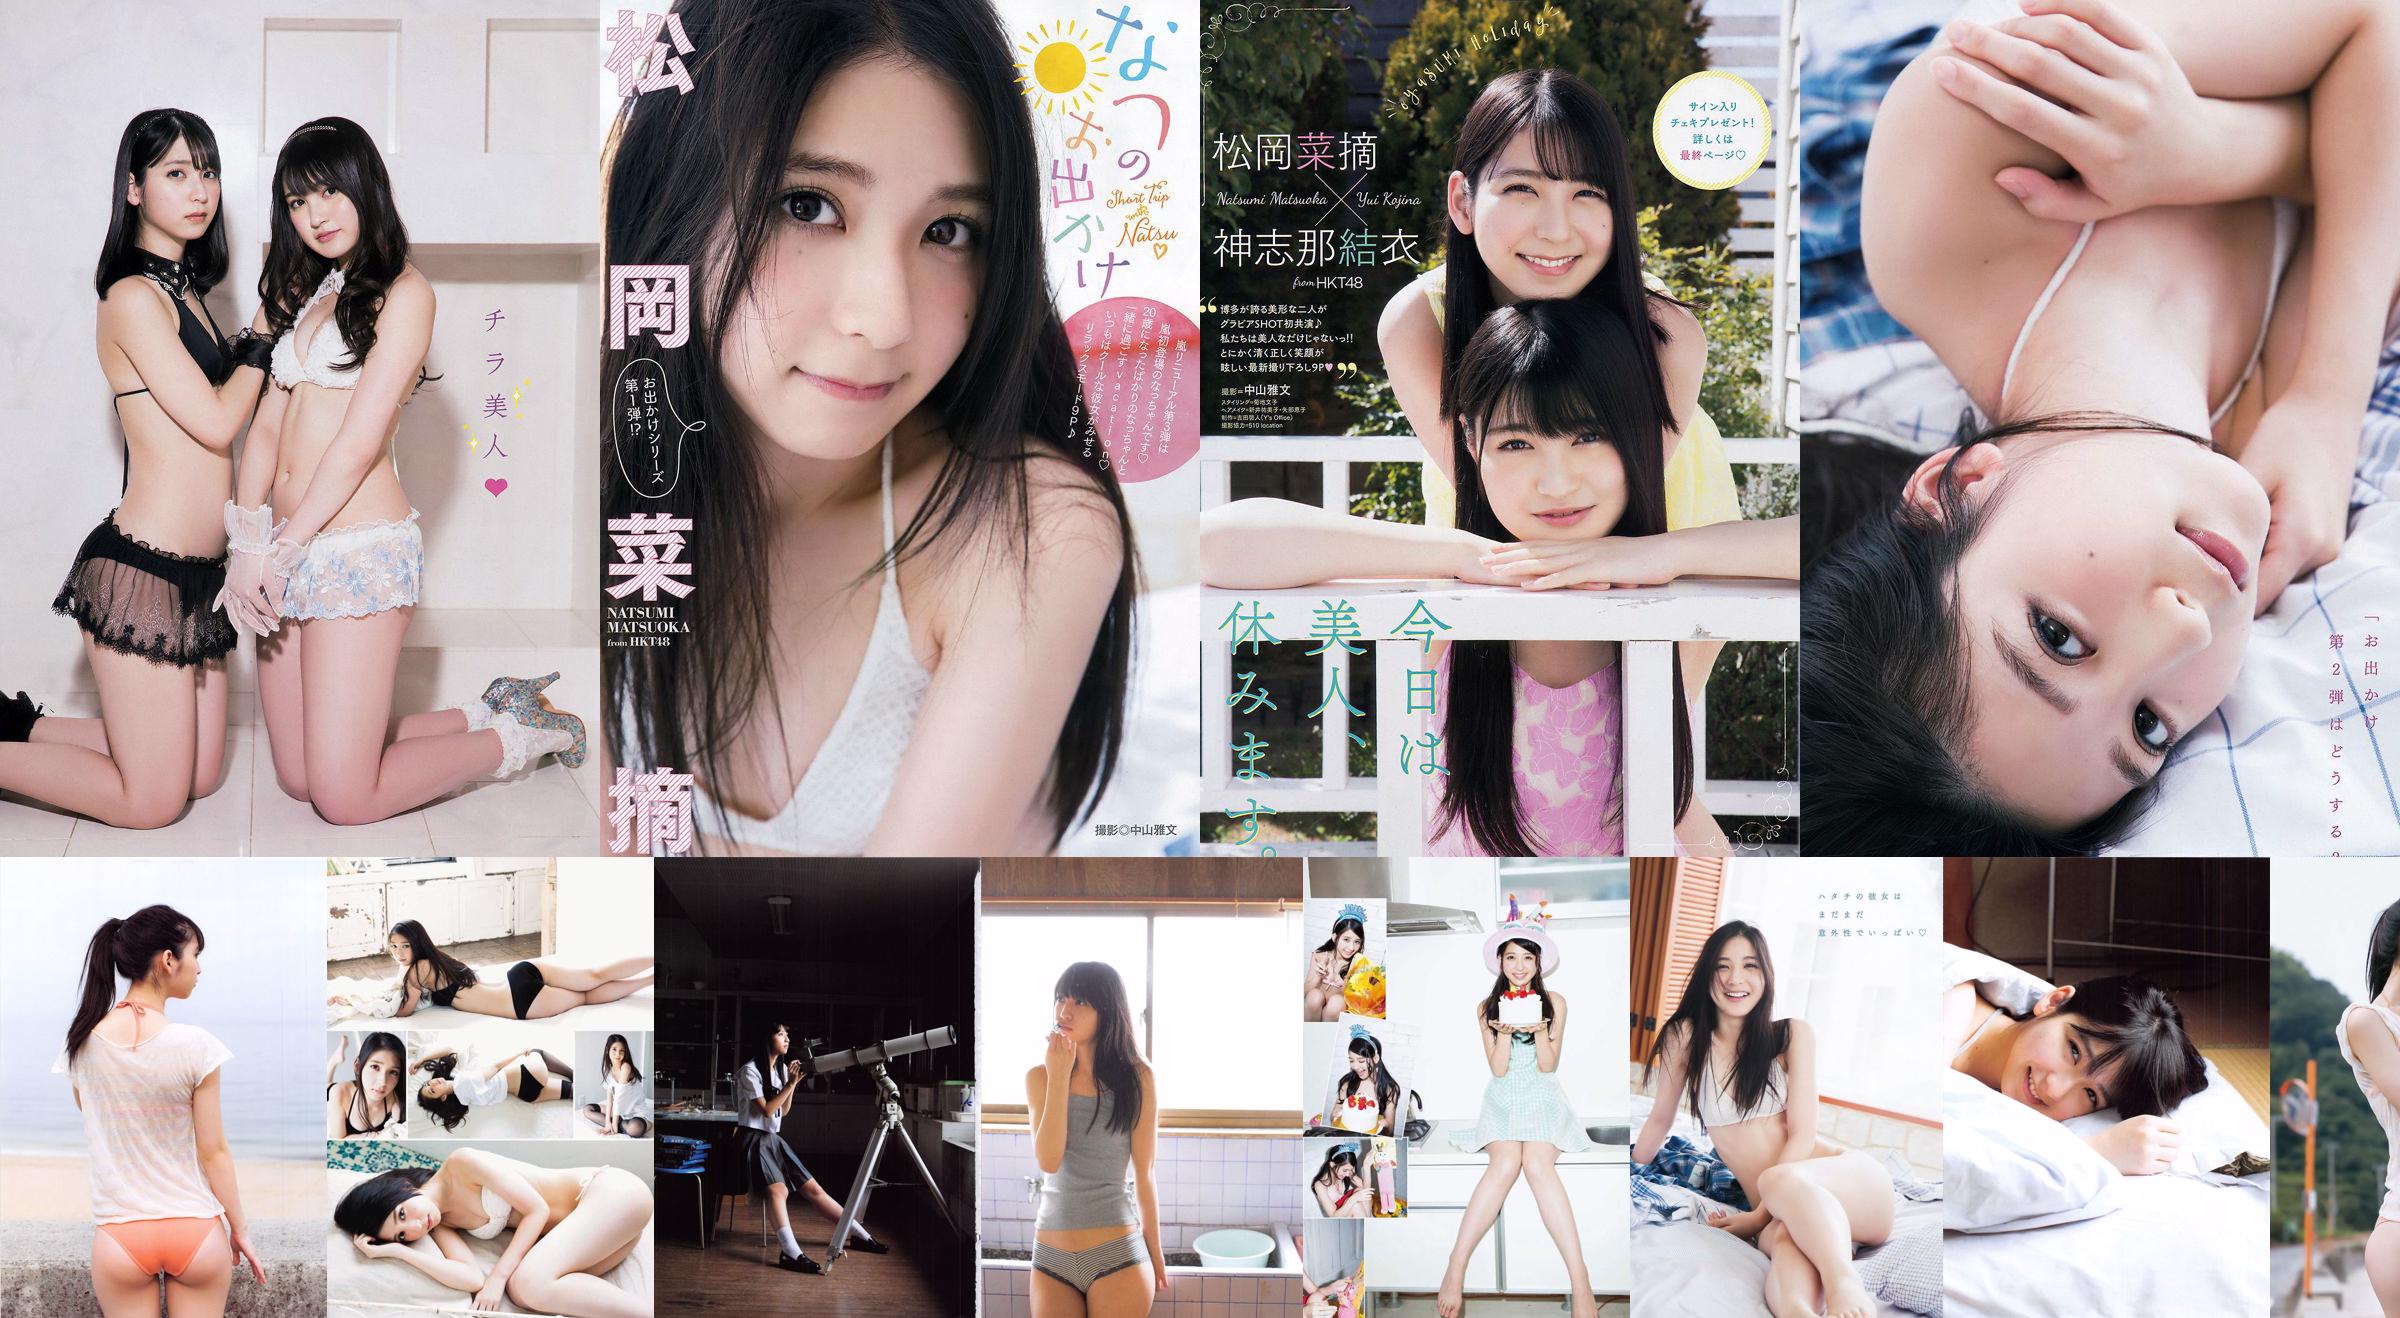 Natsumi Matsuoka / Natsumi Matsuoka "Tsuishin" [Álbum de fotos] No.99b8cb Página 46